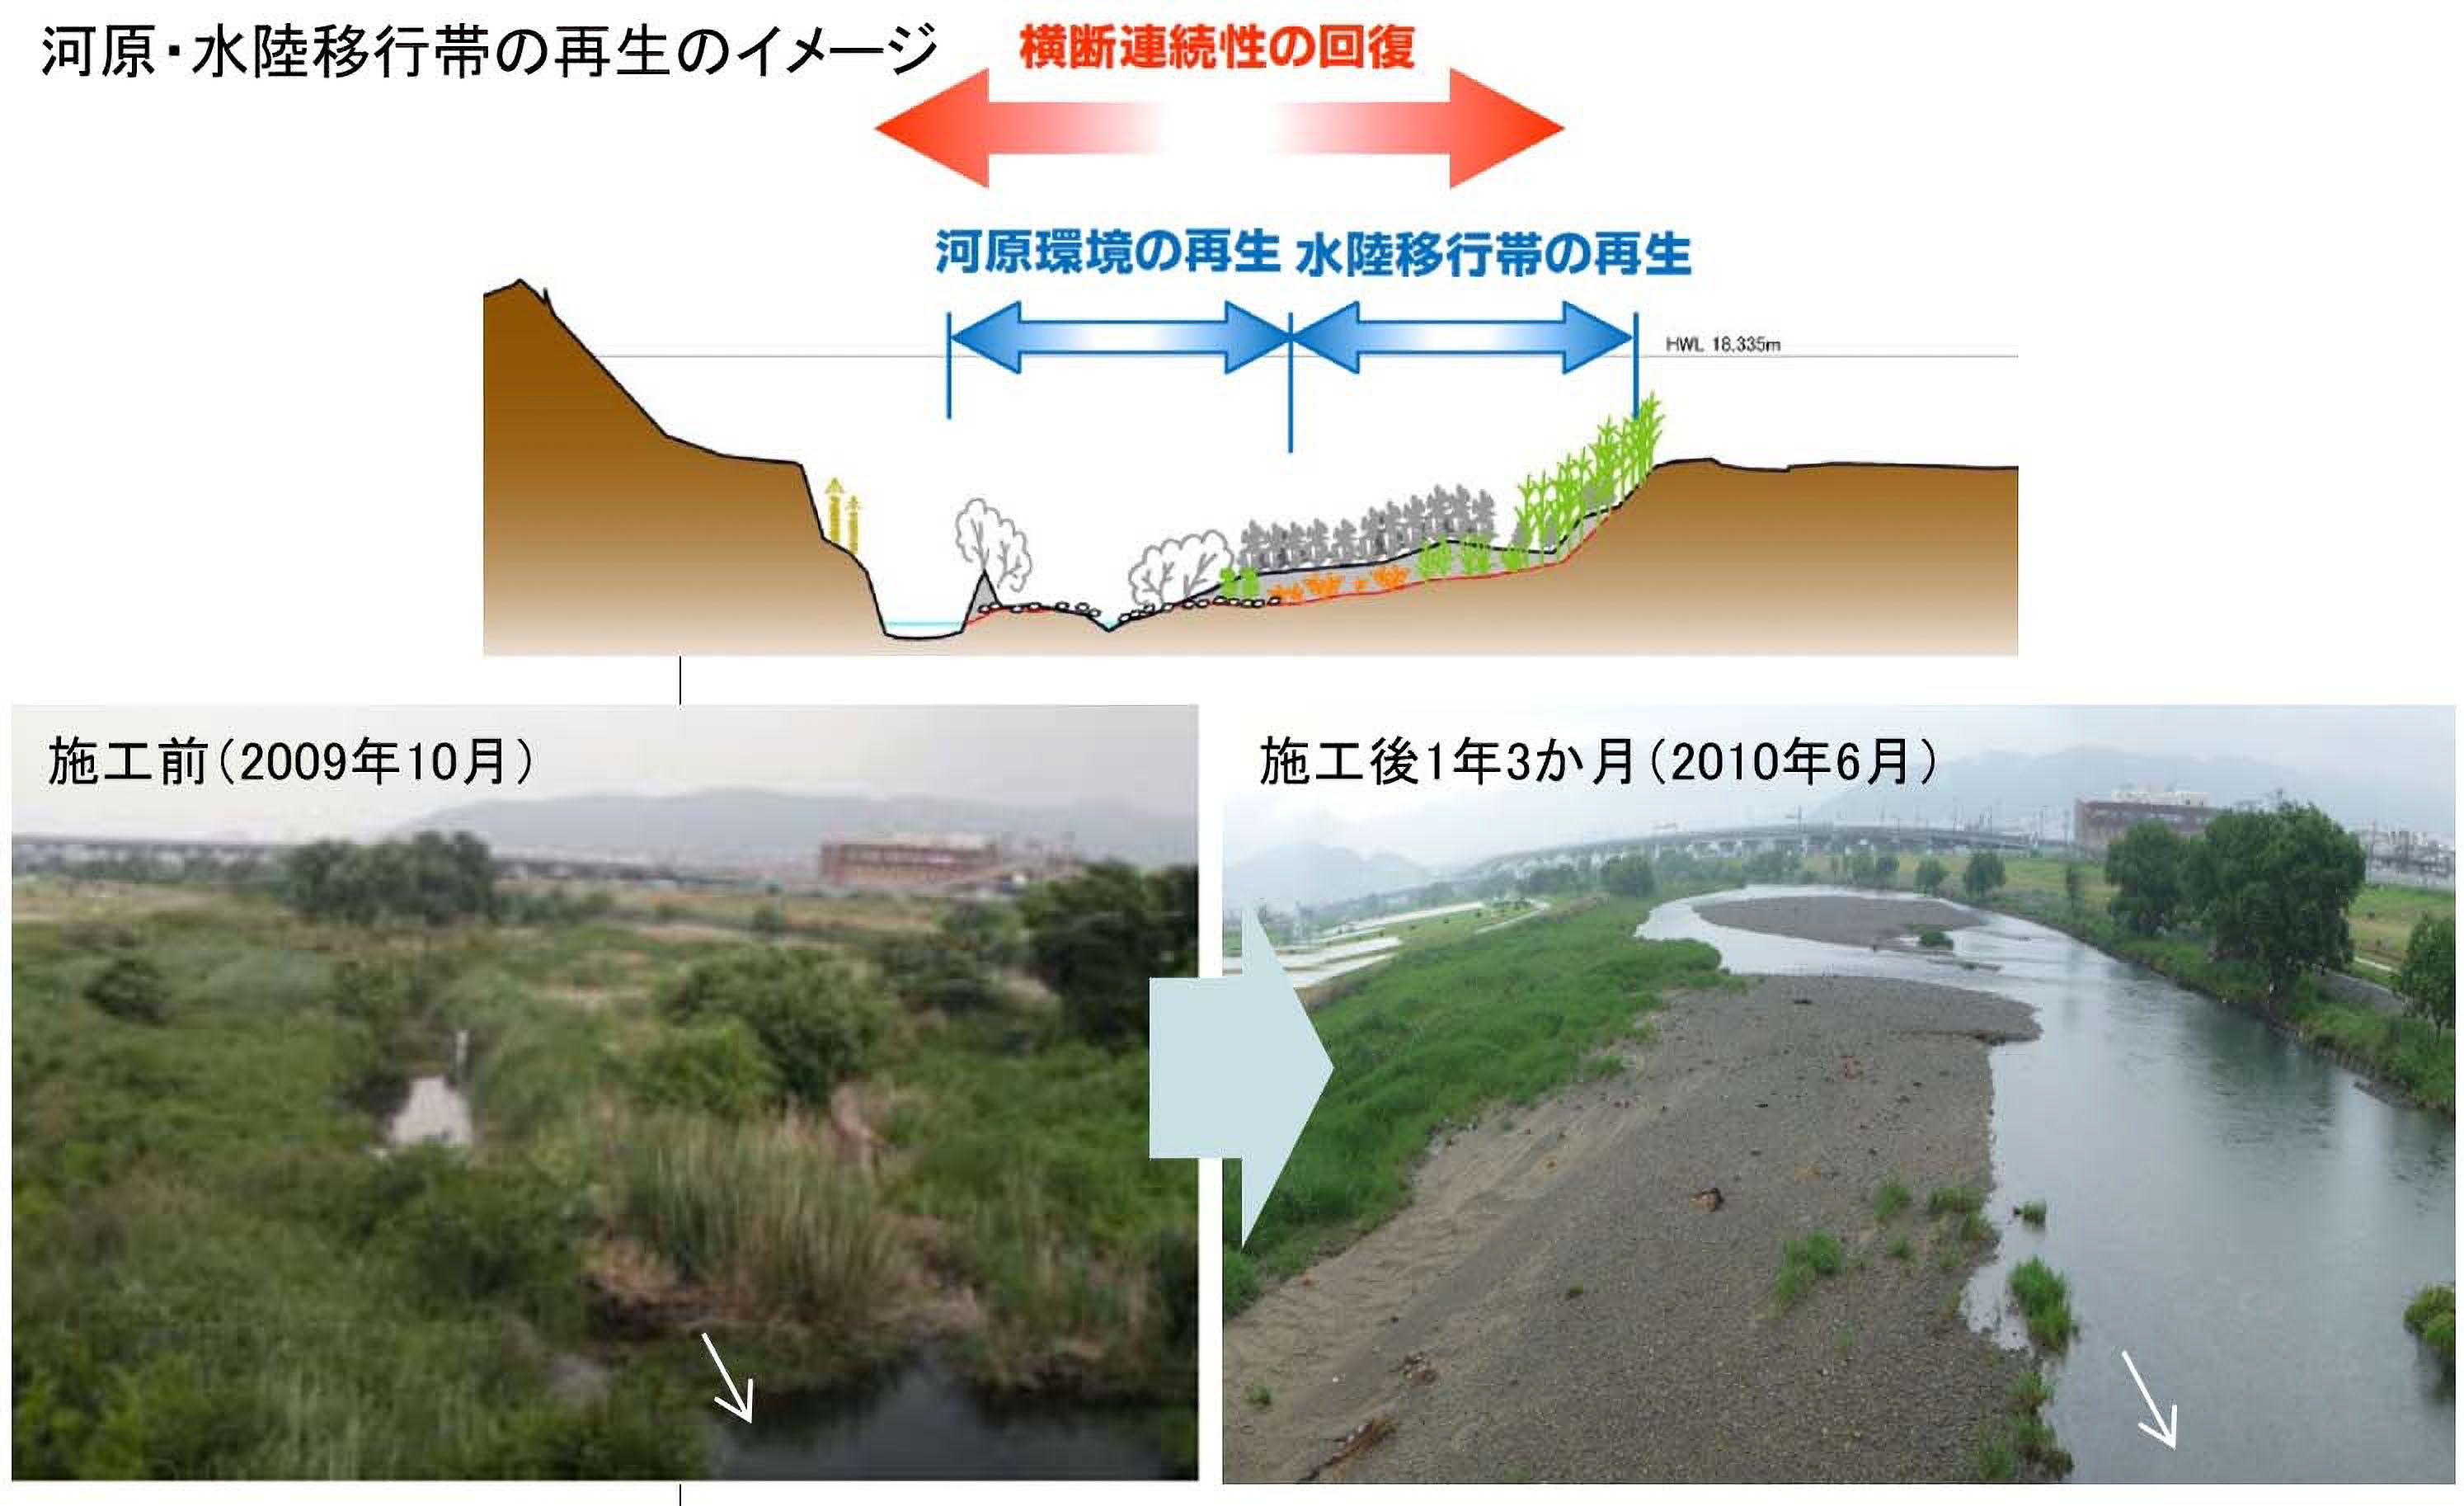 猪名川流域環境調査とりまとめ業務